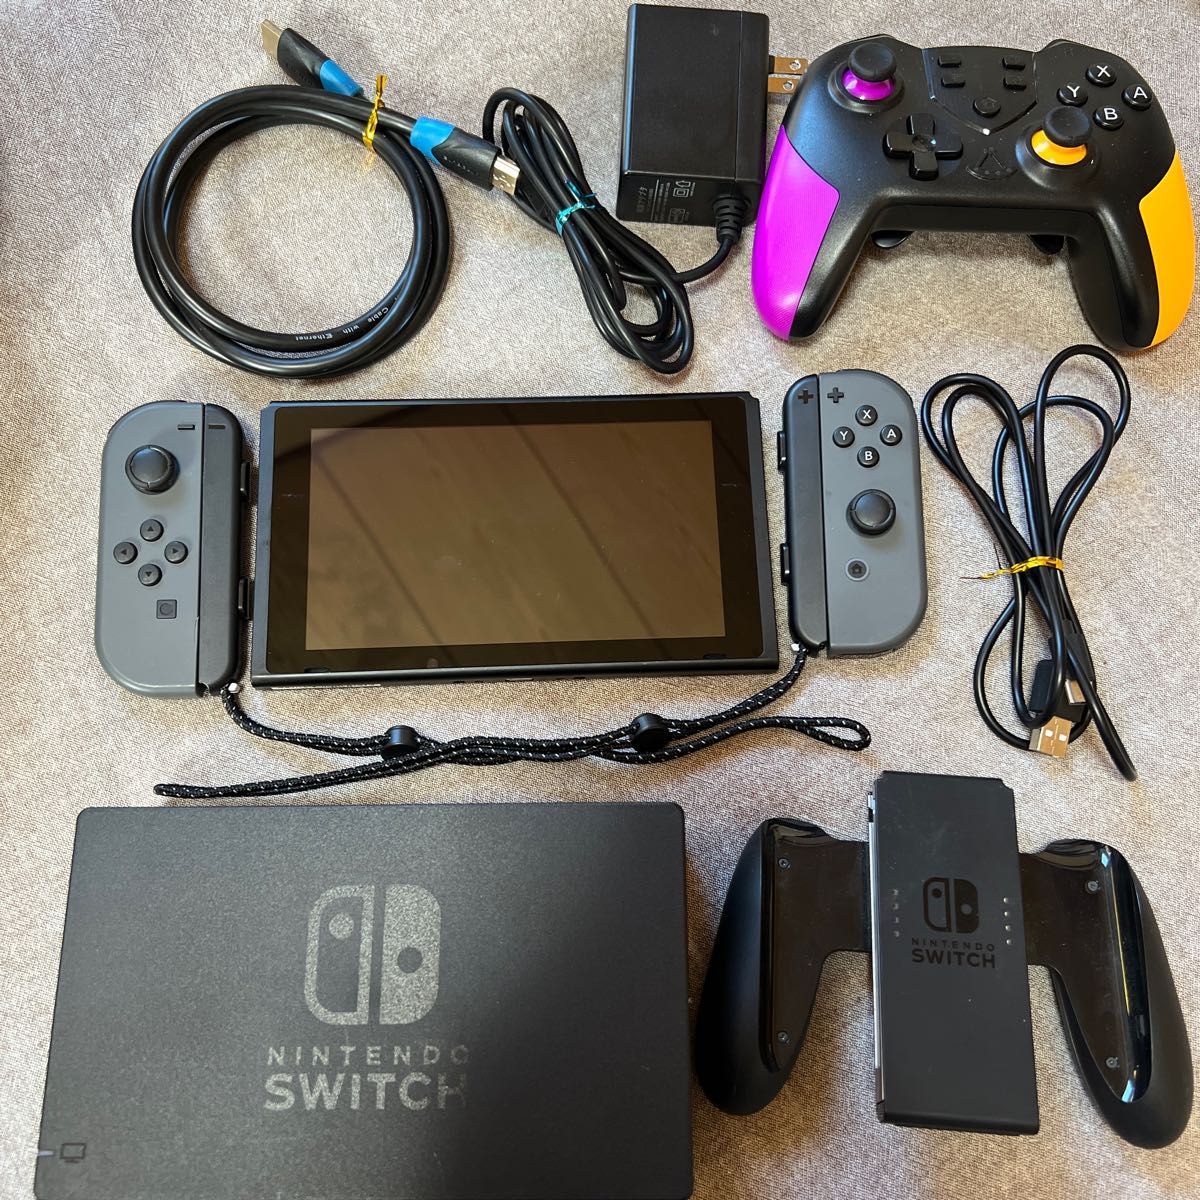 ニンテンドースイッチ Nintendo Switch 任天堂 グレー 本体 一式 セット 付属品全て 完品 美品 完全品 全部付き